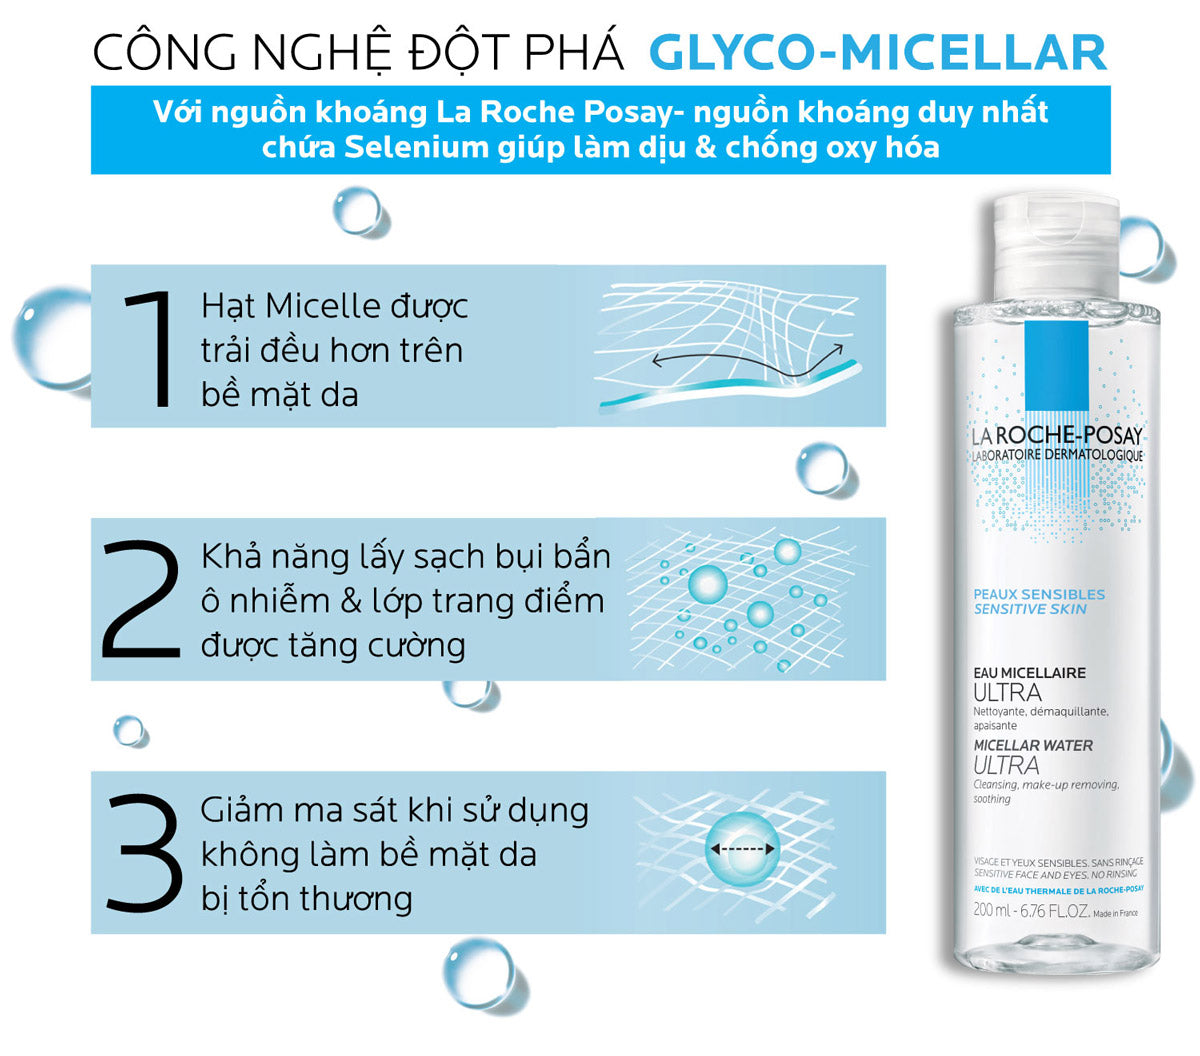 Nước Tẩy Trang Dành Cho Da Nhạy Cảm La Roche-Posay Micellar Water Ultra Sensitive Skin 400ml